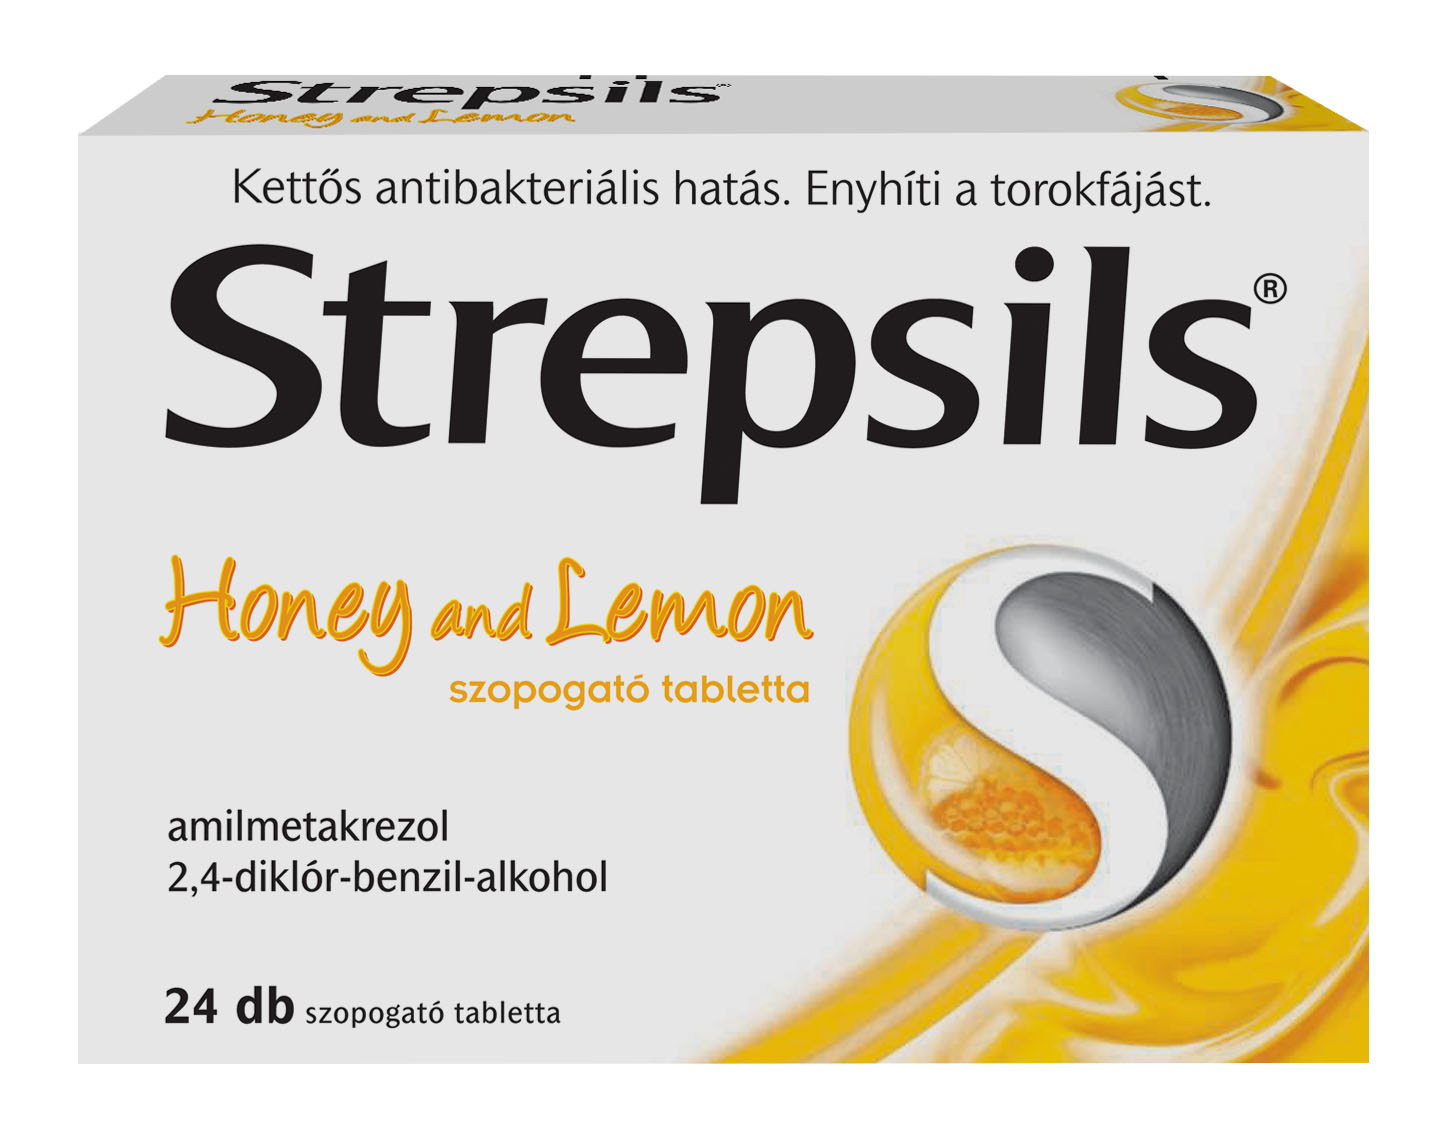 Strepsils Honey and Lemon szopogató tabletta